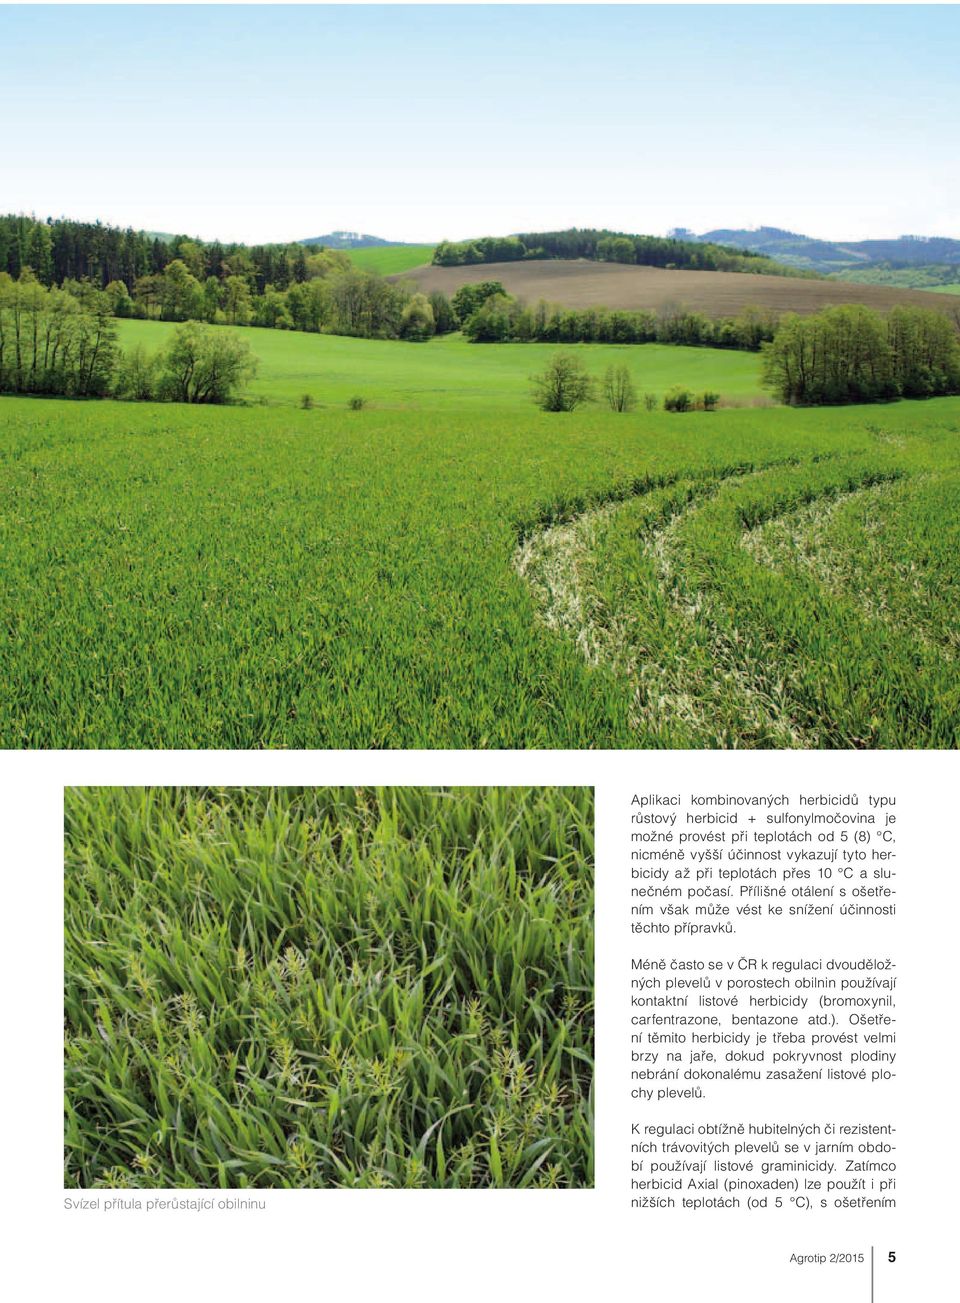 Méně často se v ČR k regulaci dvouděložných plevelů v porostech obilnin používají kontaktní listové herbicidy (bromoxynil, carfentrazone, bentazone atd.).